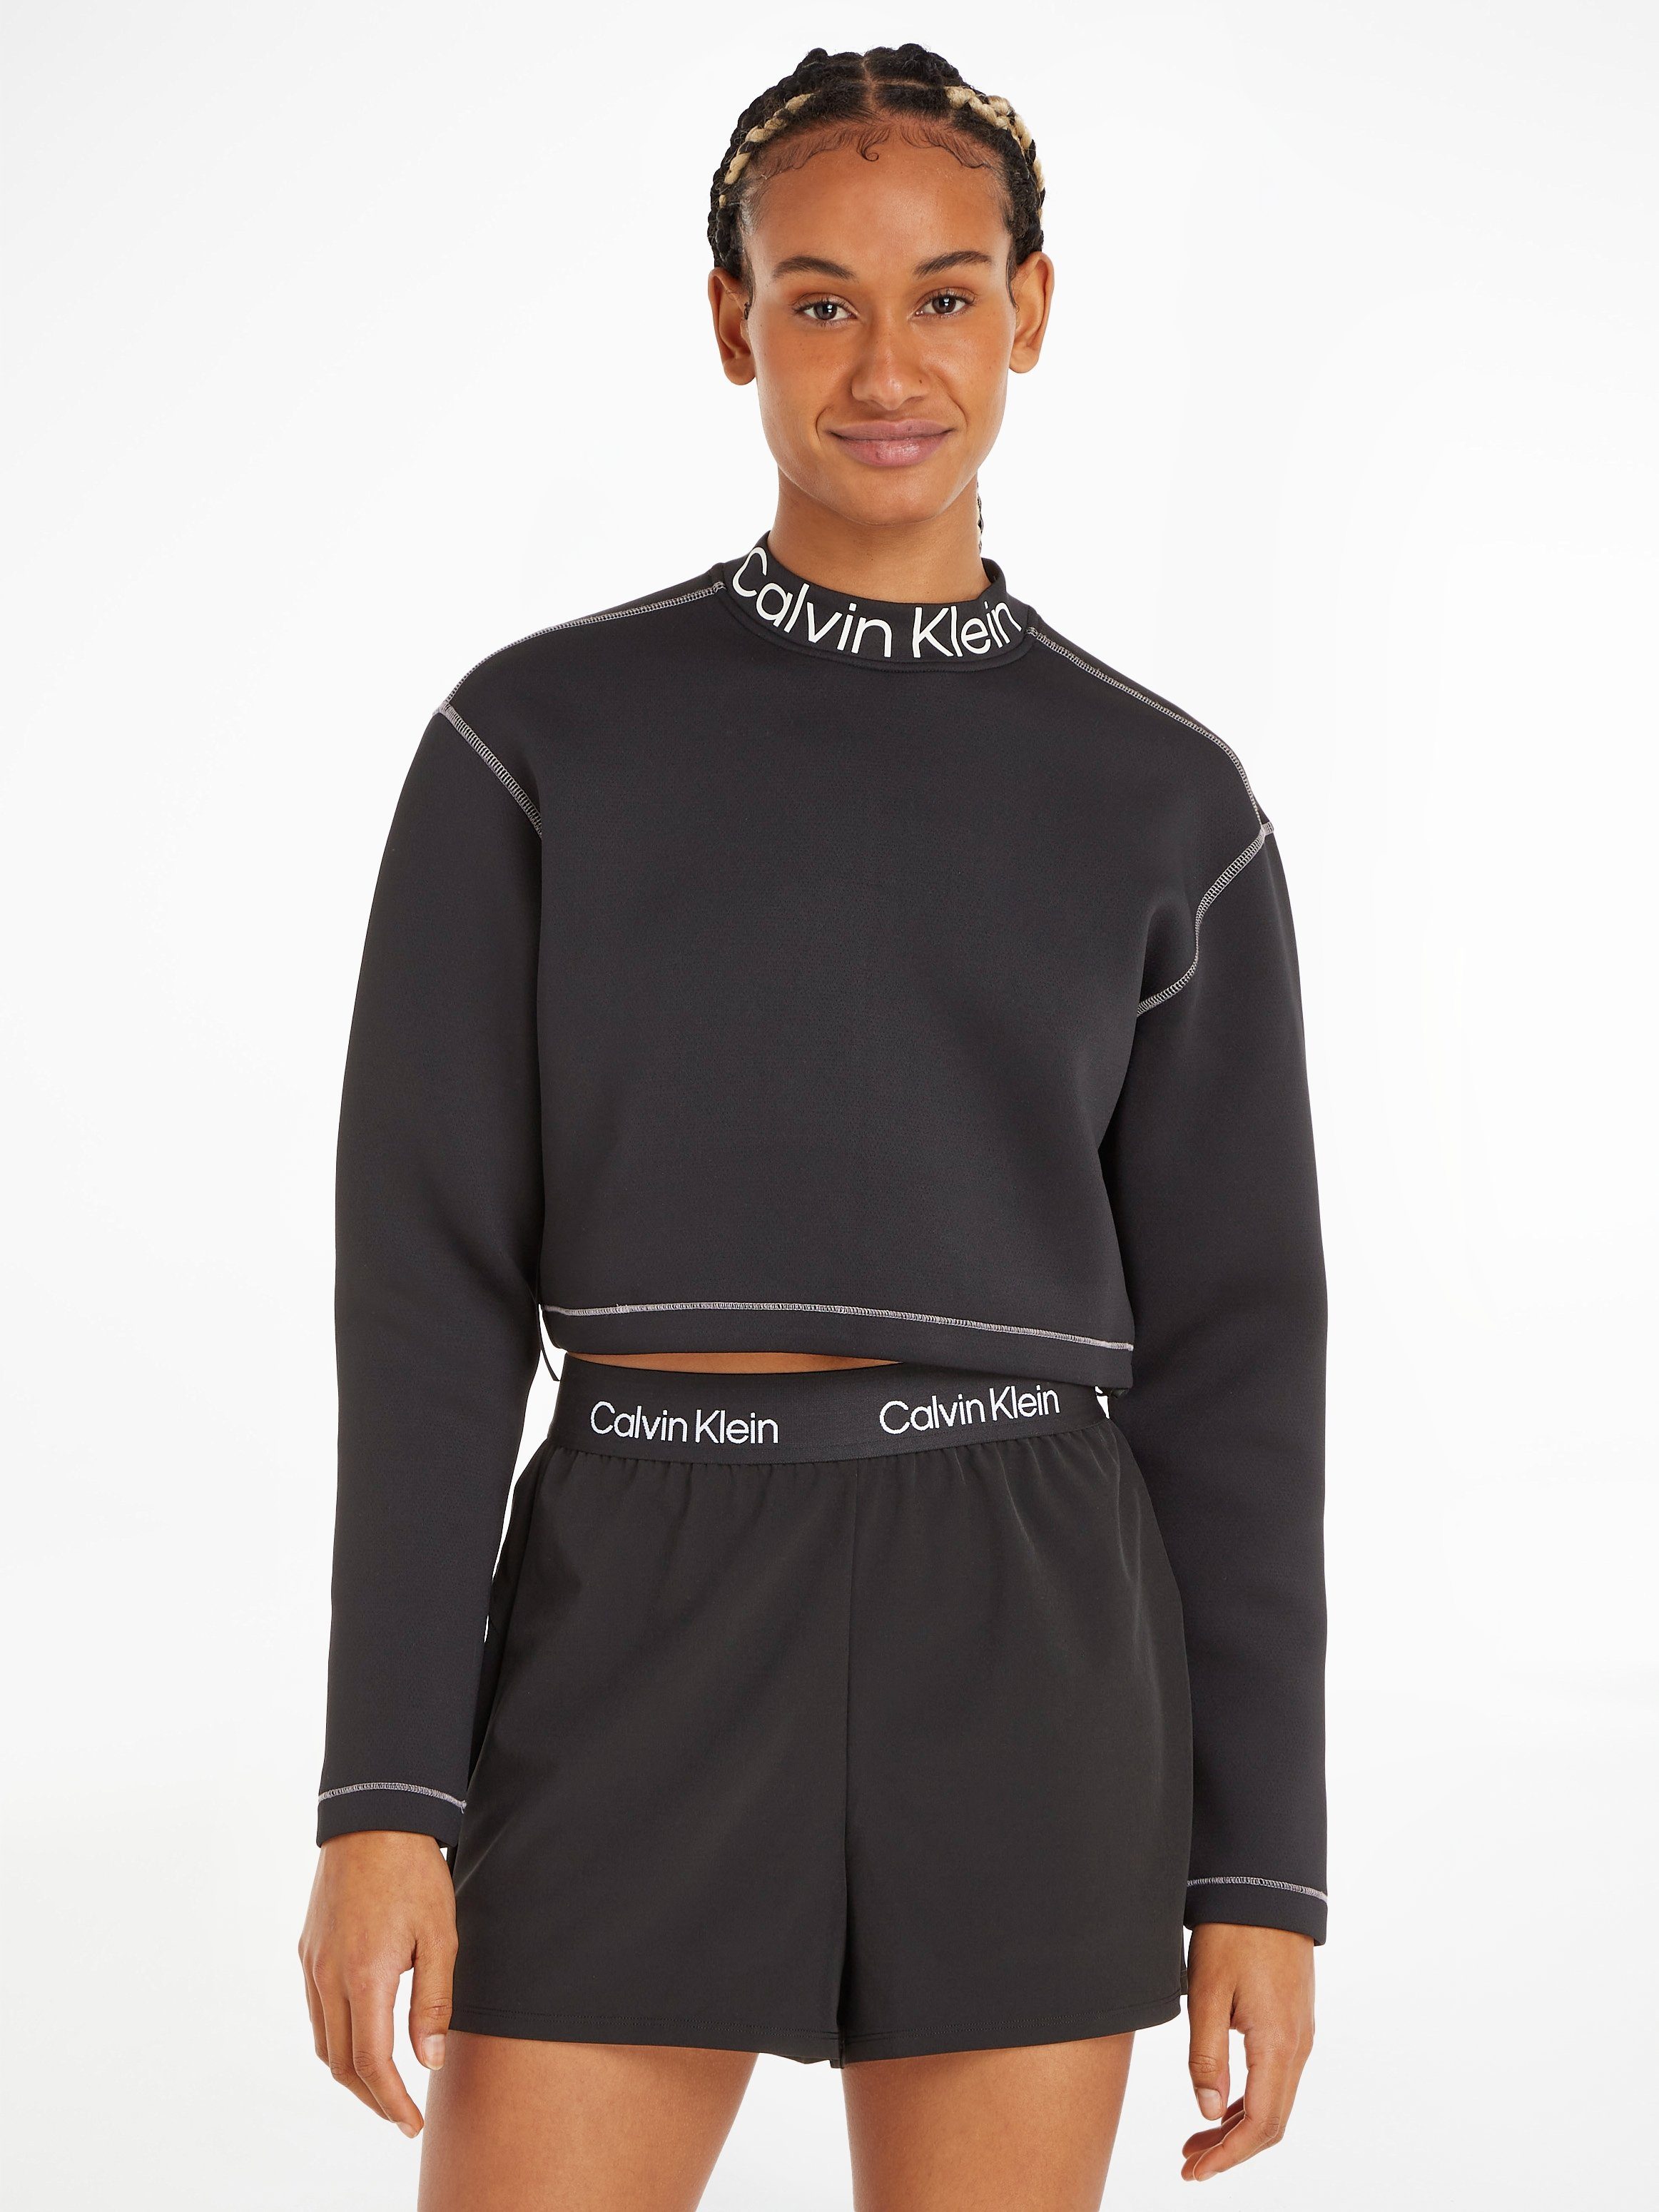 Calvin Klein PW - schwarz Pullover Rundhalspullover Sport